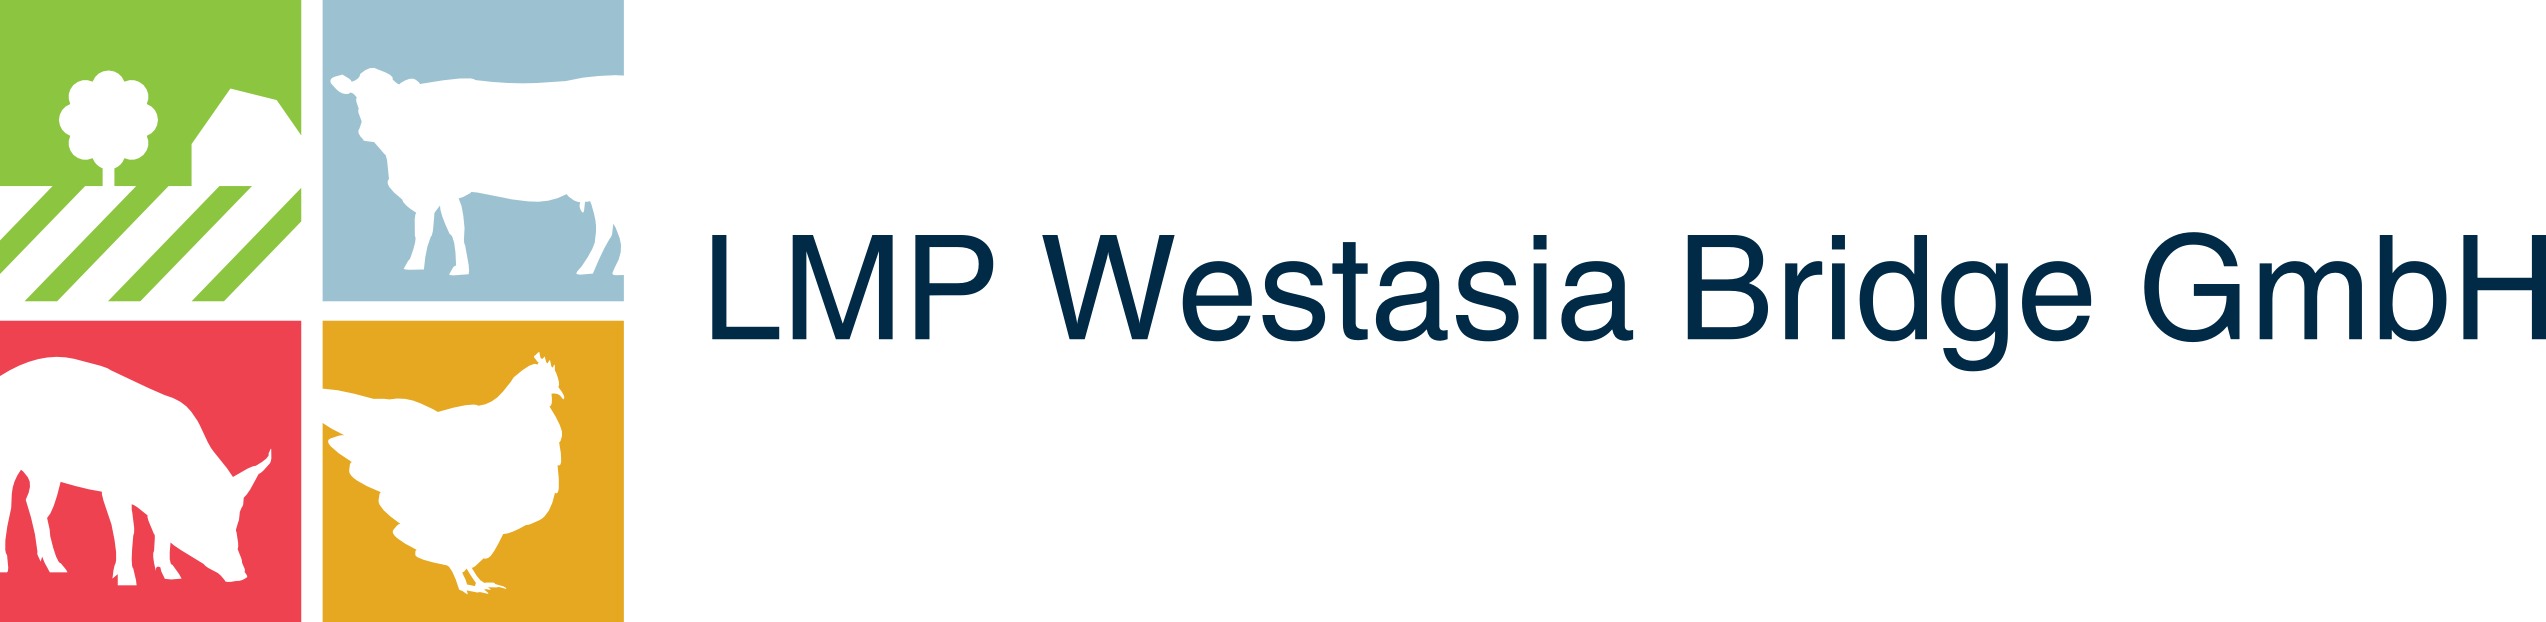 LMP Westasia Bridge GmbH